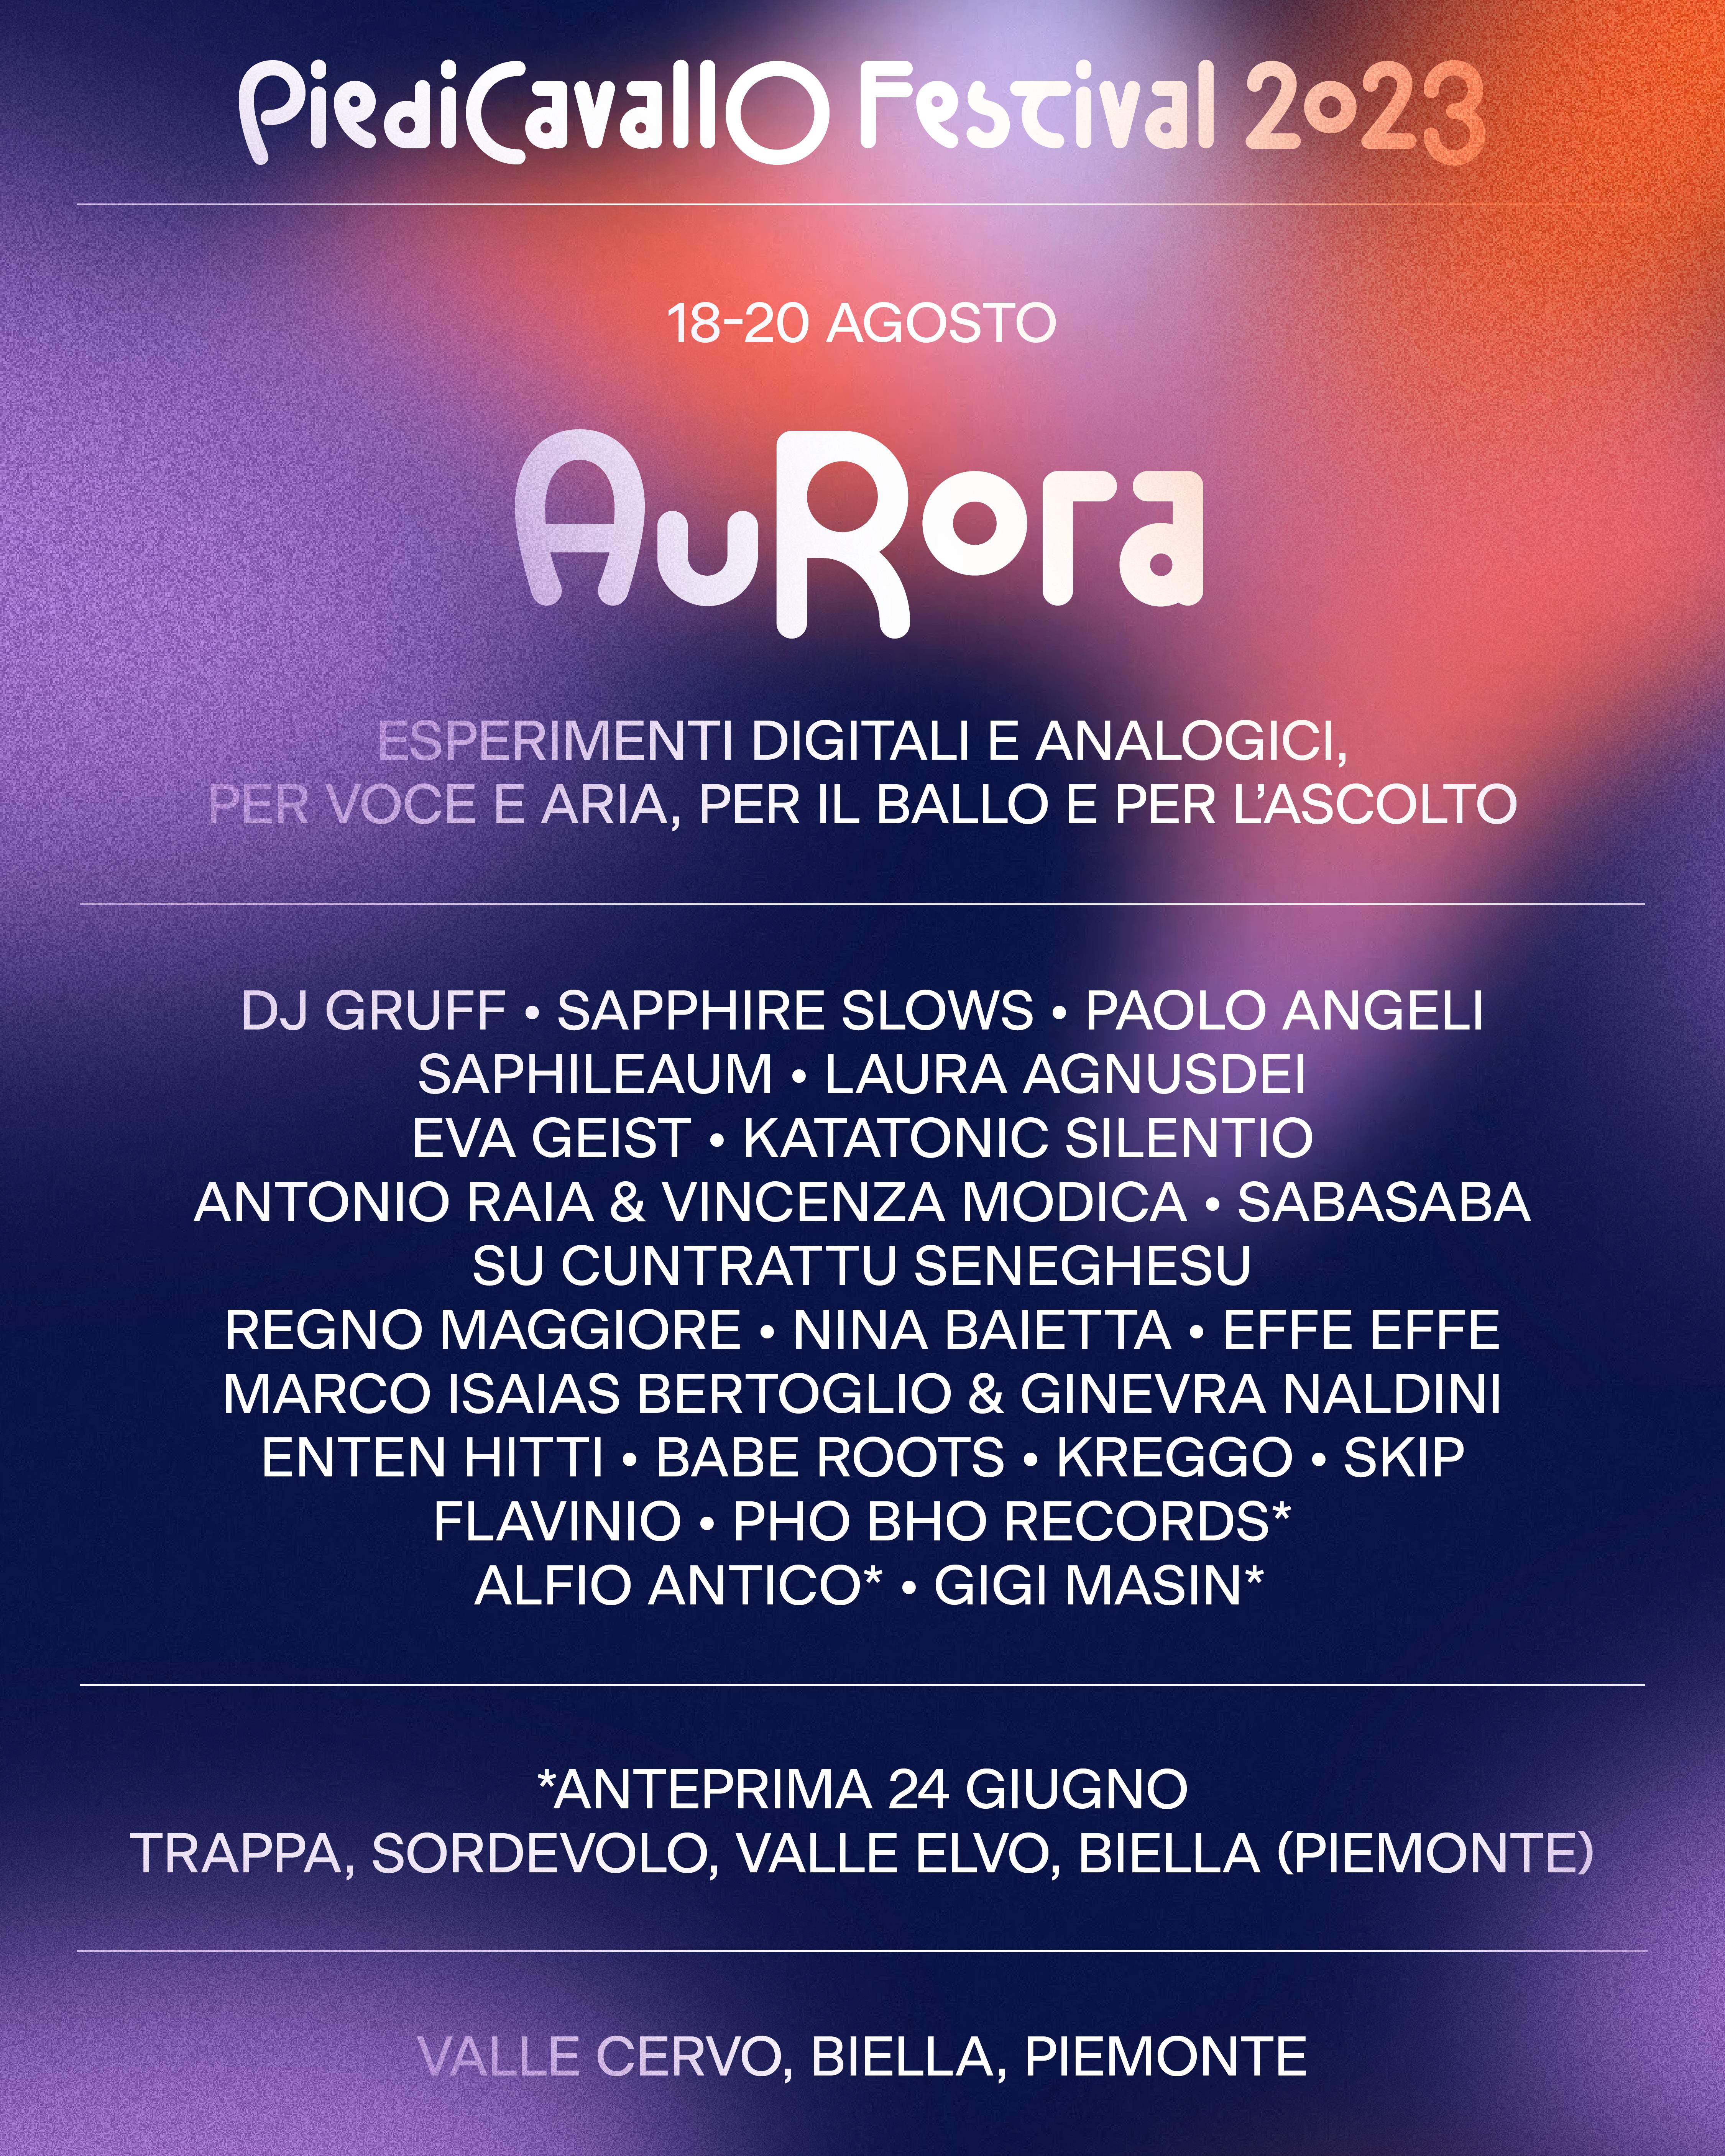 Aurora - Piedicavallo Festival 2023 - Página frontal